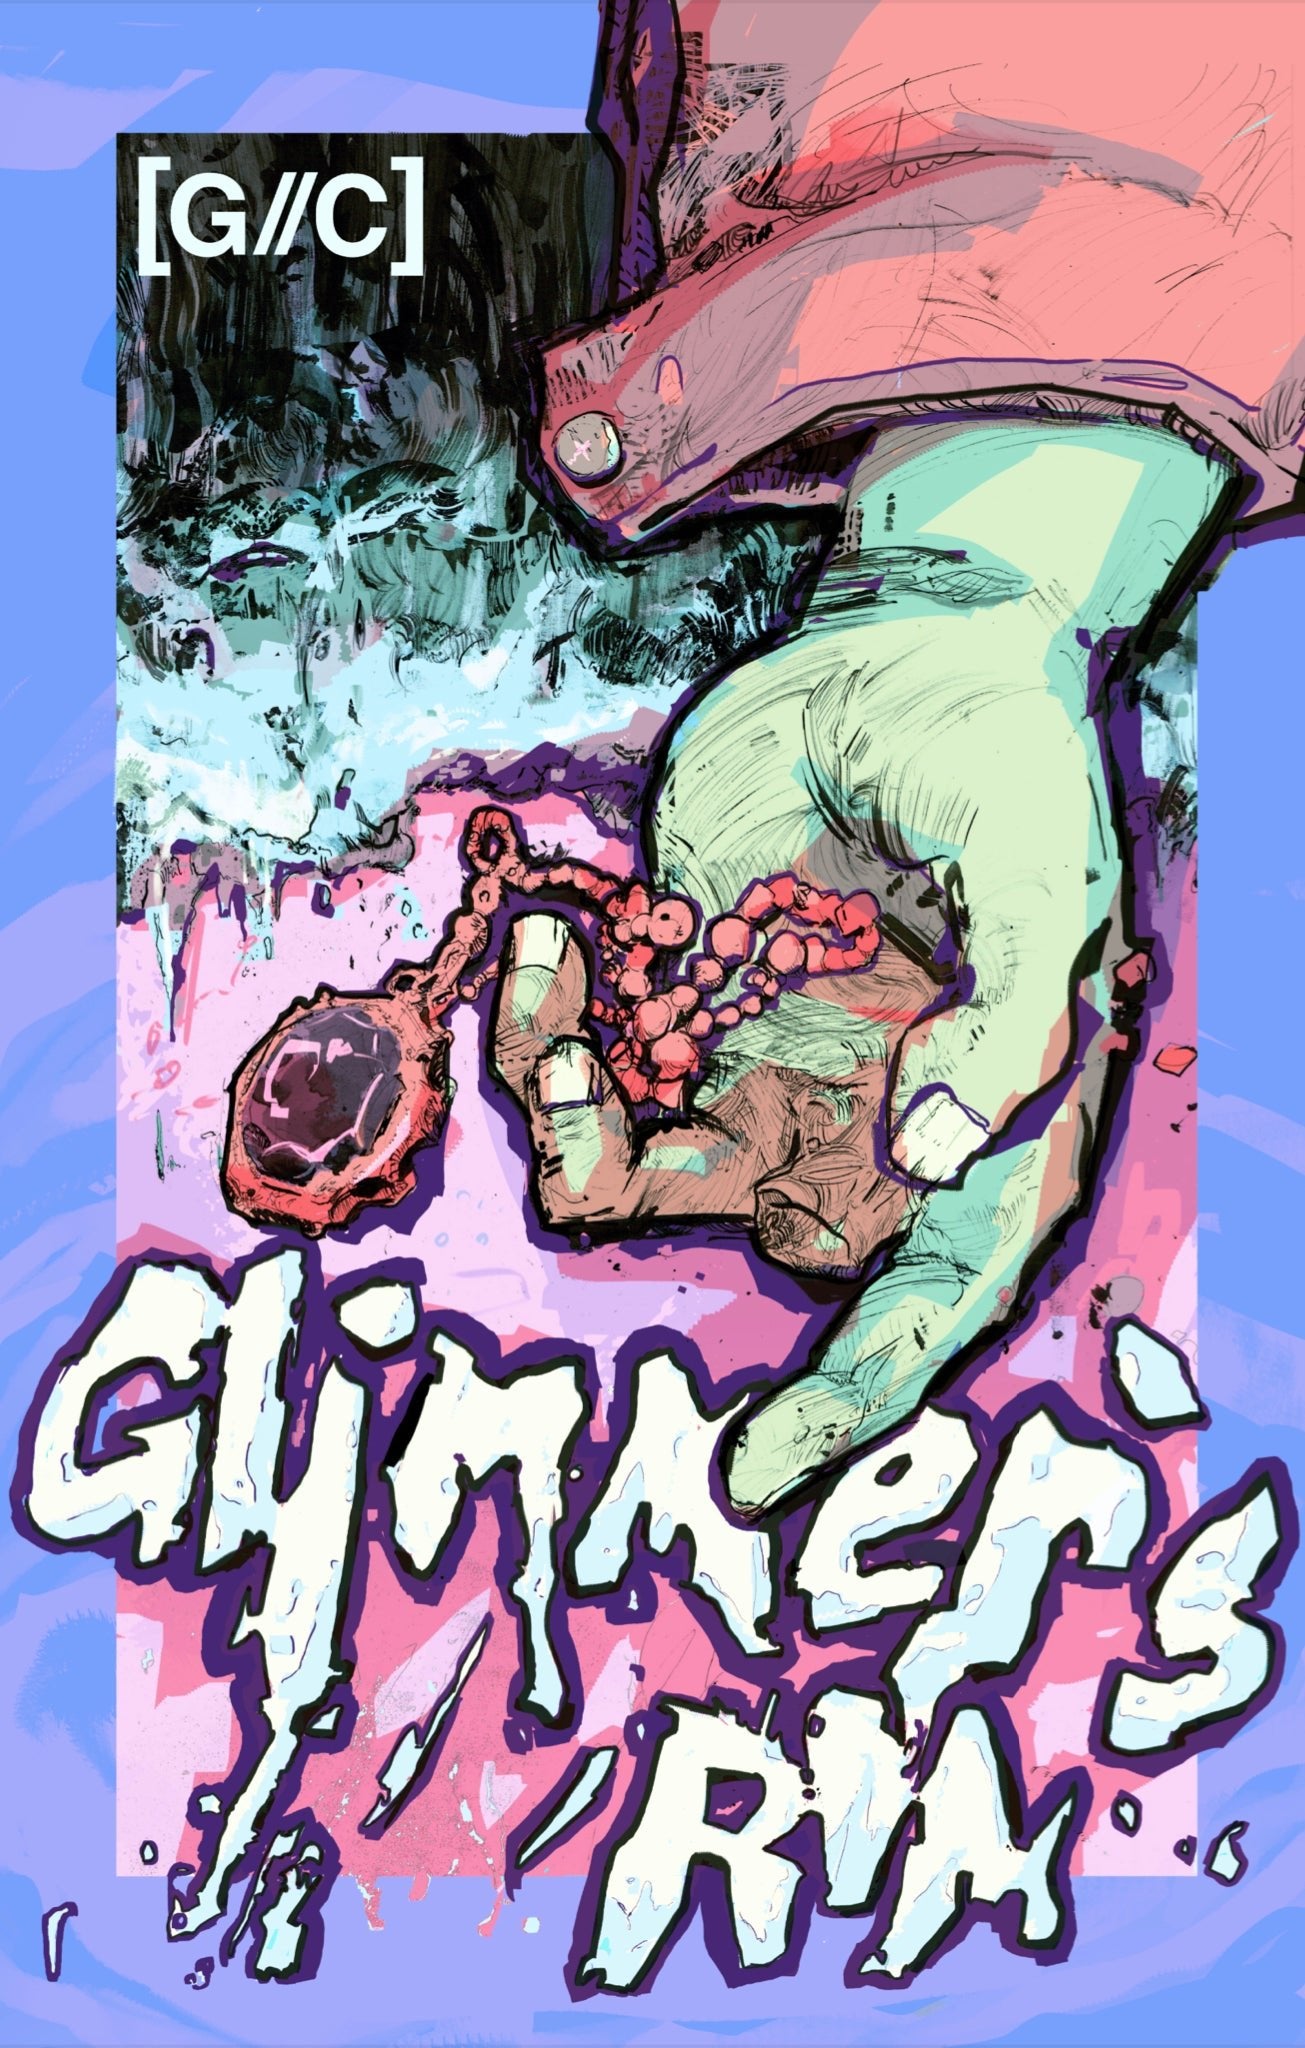 Glimmer's Rim